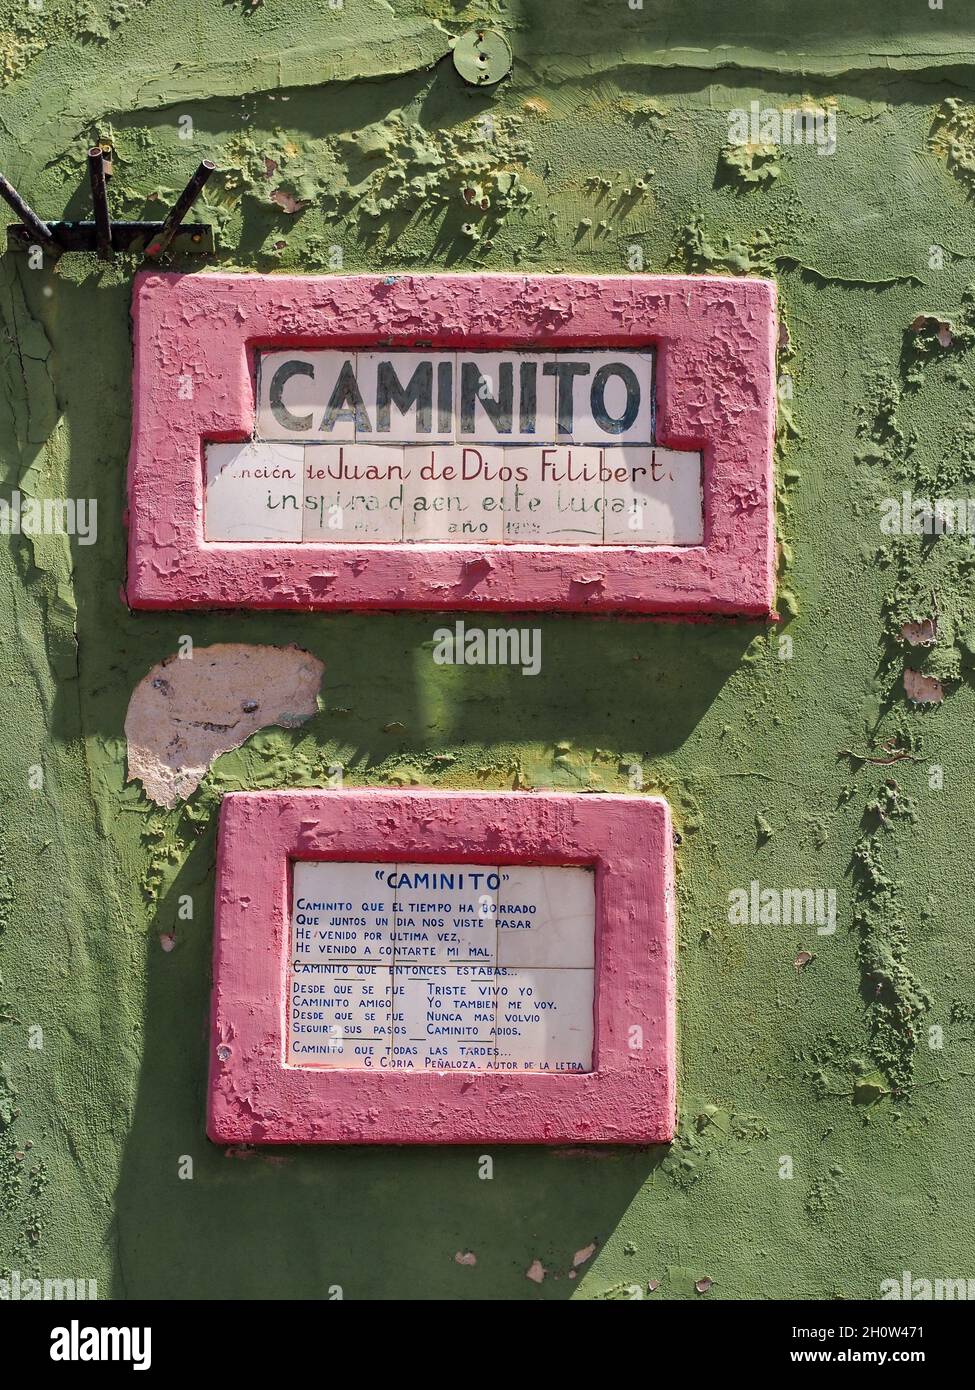 BUENOS AIRES, ARGENTINE - 07 septembre 2020: Un signe de 'Caminito' avec un poème correspondant sur un mur vert Banque D'Images